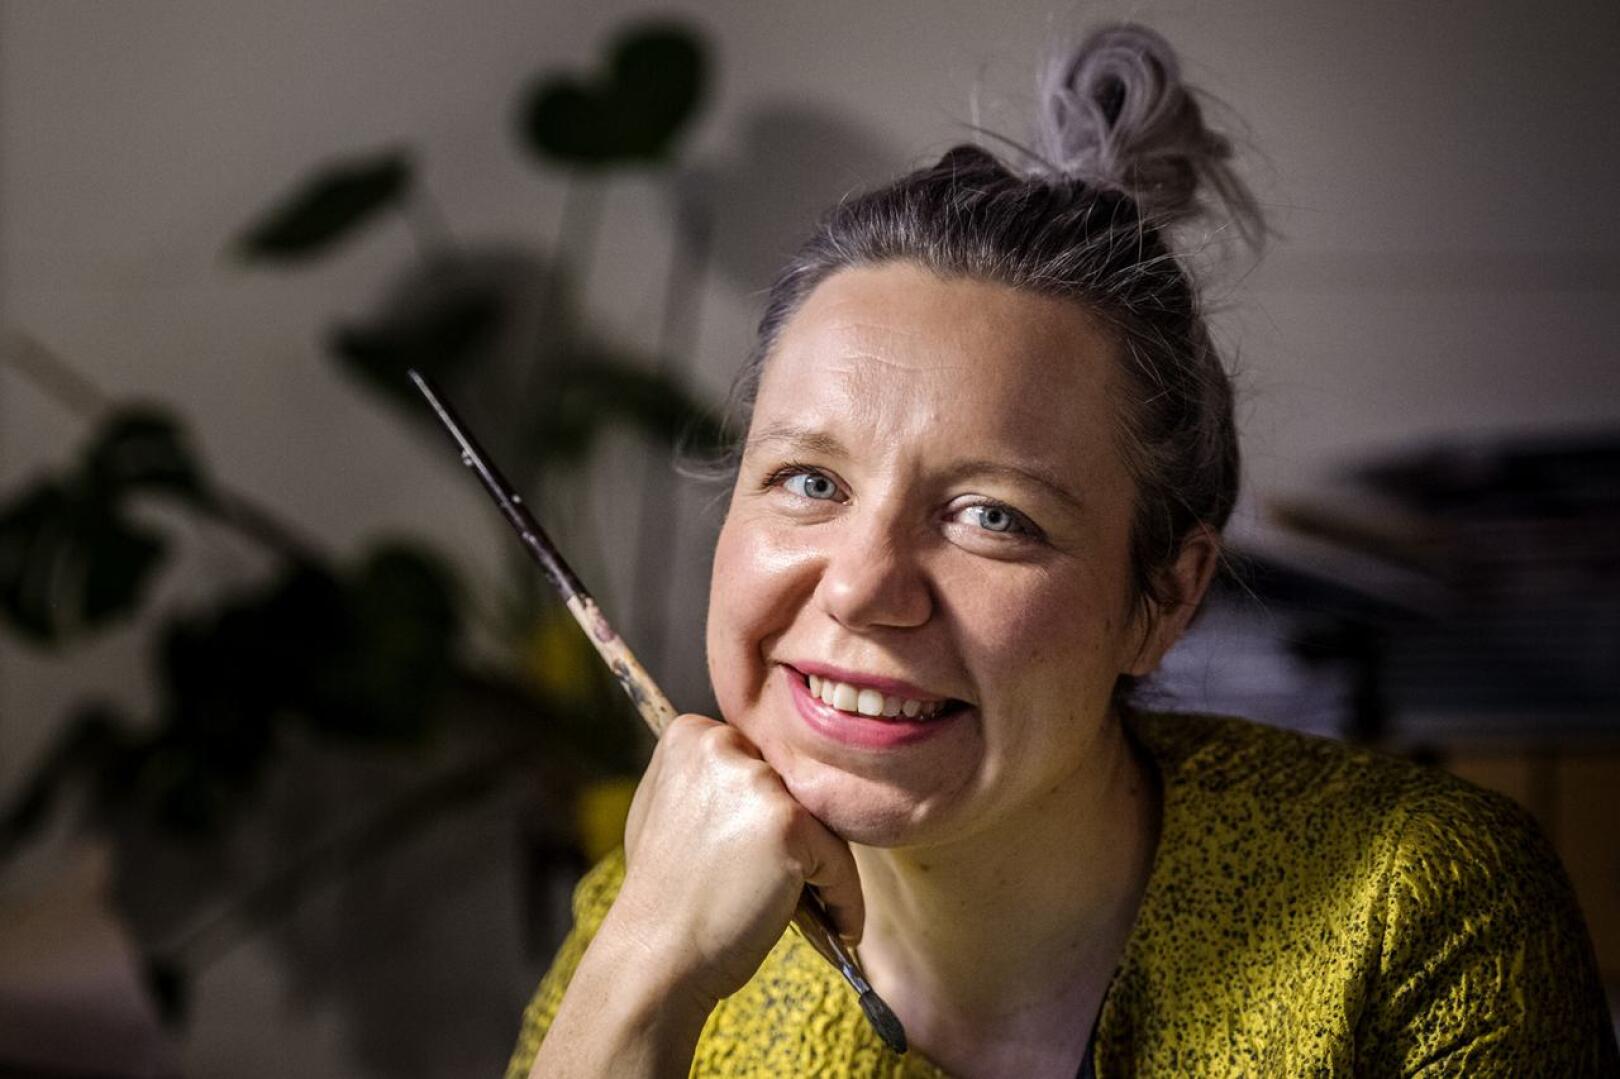 Kokkolalaisen Elina Warstan suunnittelemista viime vuoden kirjojen kansista viisi palkittiin. Yhteensä kunniaa jaettiin kymmenelle kannelle.